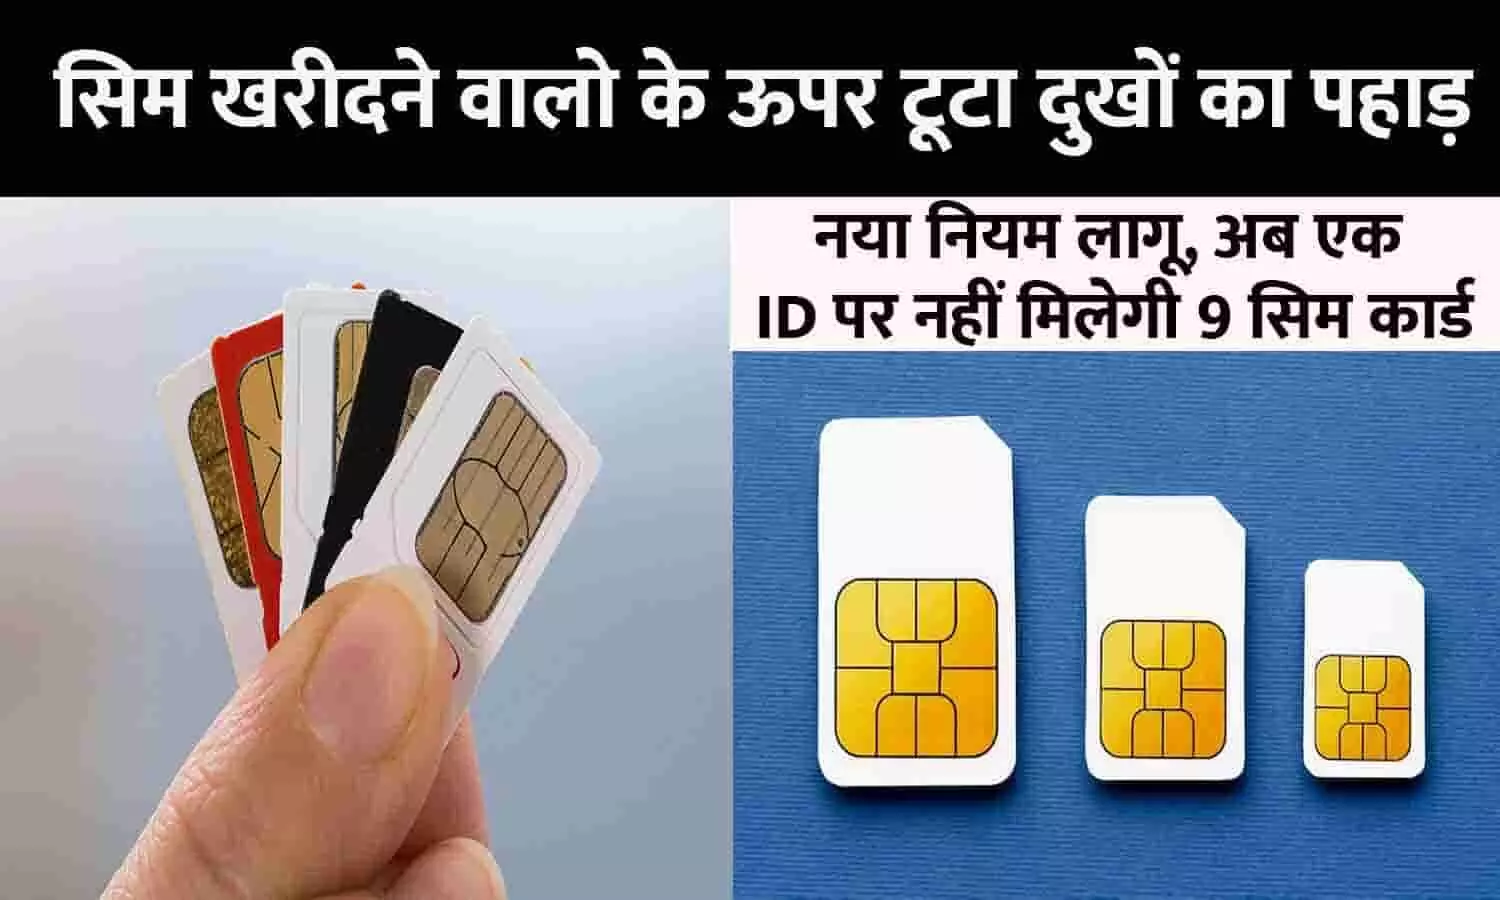 SIM Card Rule Changed Big Alert 2023: सिम खरीदने वालो के ऊपर टूटा दुखों का पहाड़! नया नियम लागू, अब एक ID पर नहीं मिलेगी 9 सिम कार्ड, ग्राहक तुरंत ध्यान दे